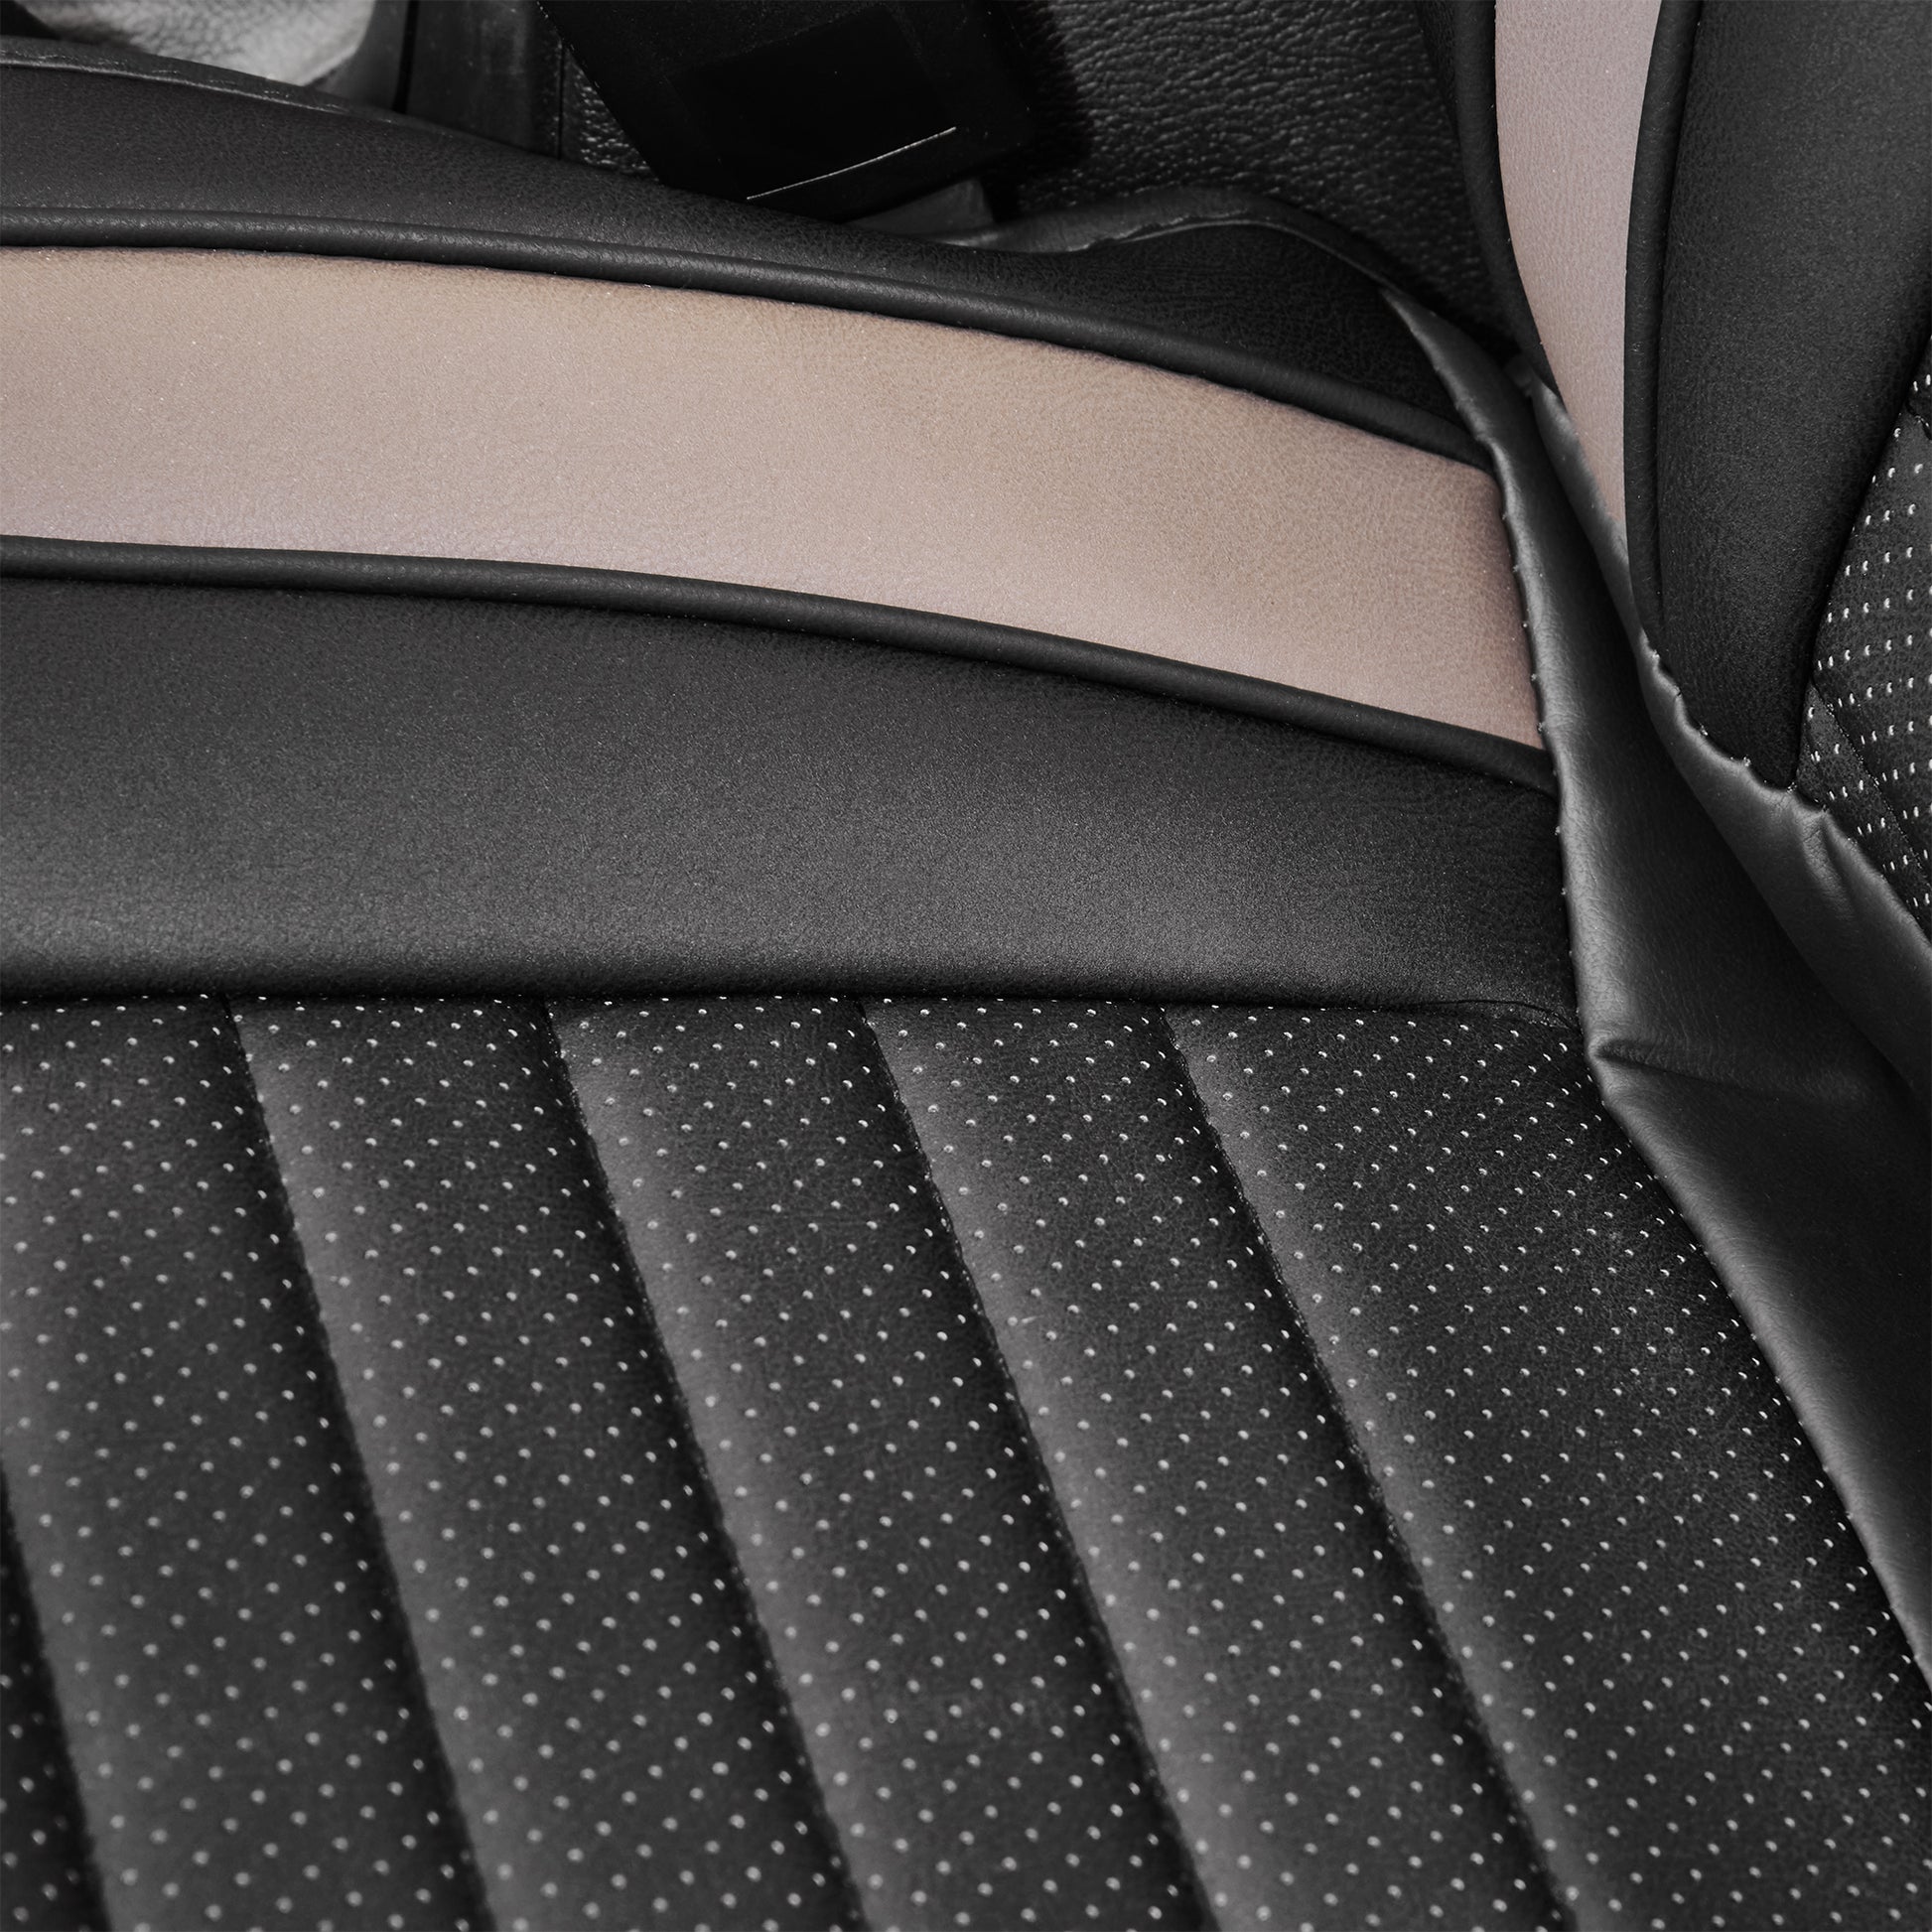  2 Pack Car Seat Cushion,Premium Comfort Plush Fabric